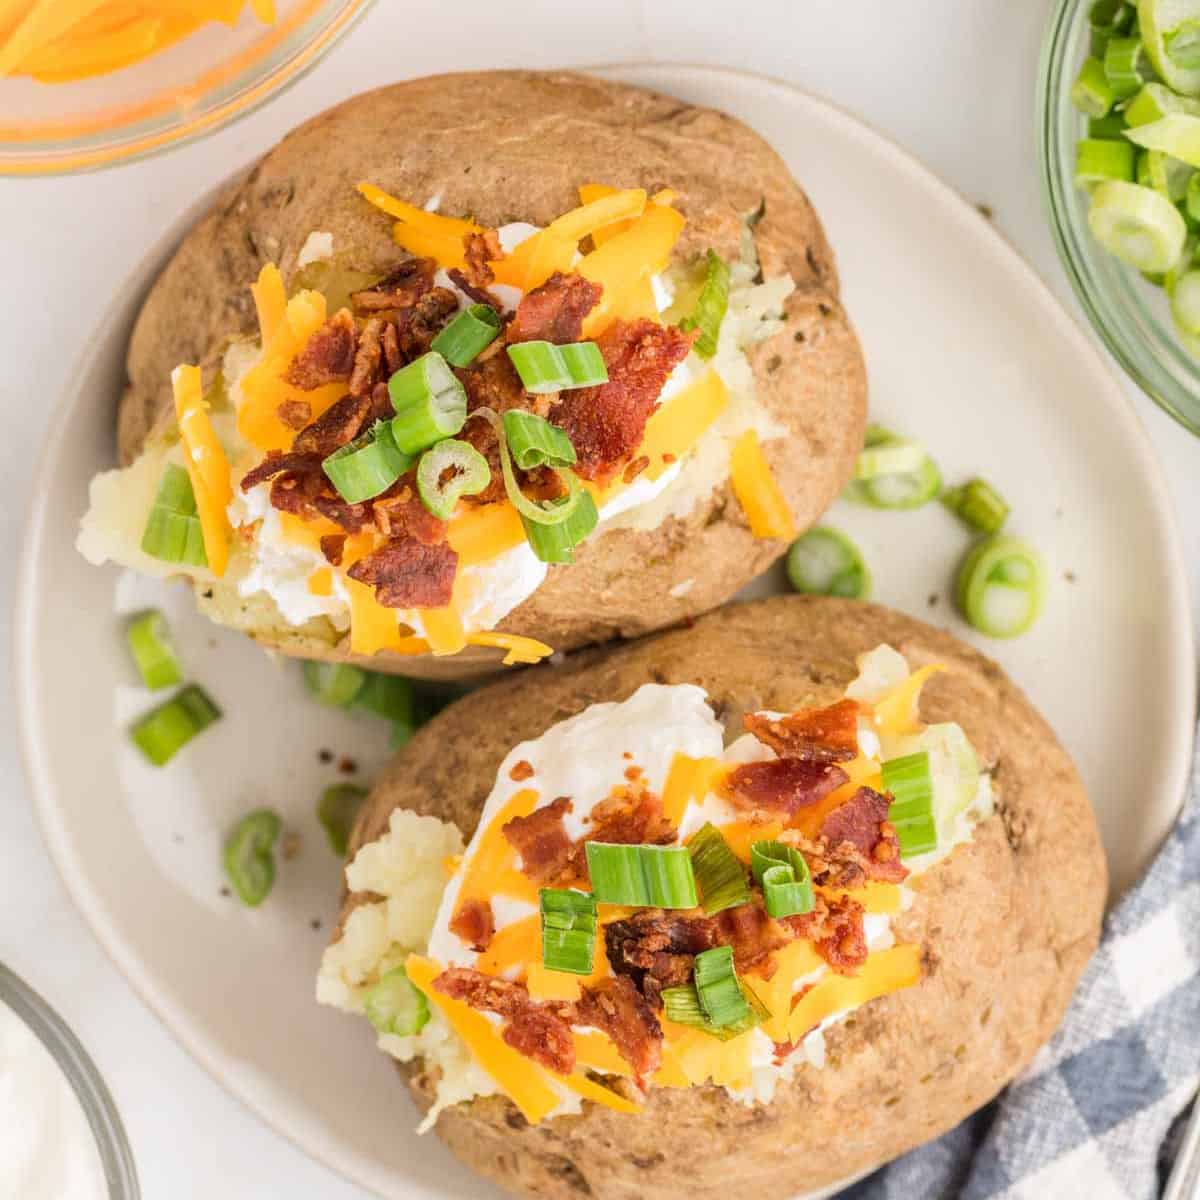 https://www.eatingonadime.com/wp-content/uploads/2023/04/Baked-Potatoes-in-the-Microwave-24-of-27.jpg